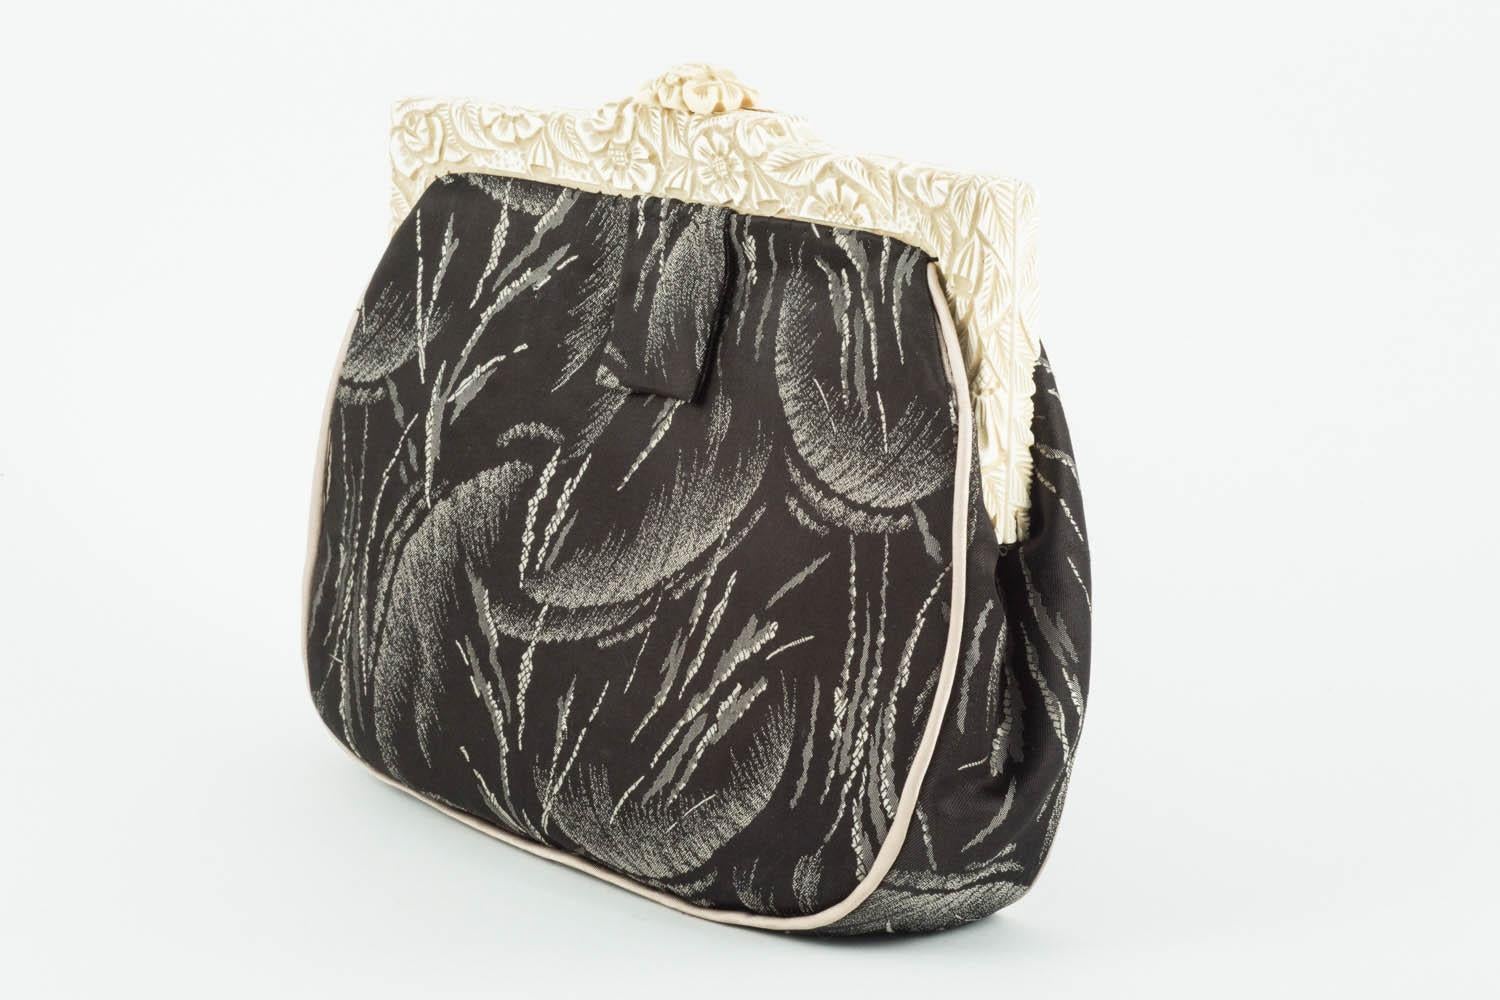 Il s'agit d'une ravissante pochette, réalisée dans un magnifique tissu de soie Art déco, et bordée d'un liseré de soie grise. Le cadre est en bakélite sculptée blanc cassé/crème avec des motifs de feuilles et de fleurs, et l'intérieur est en soie